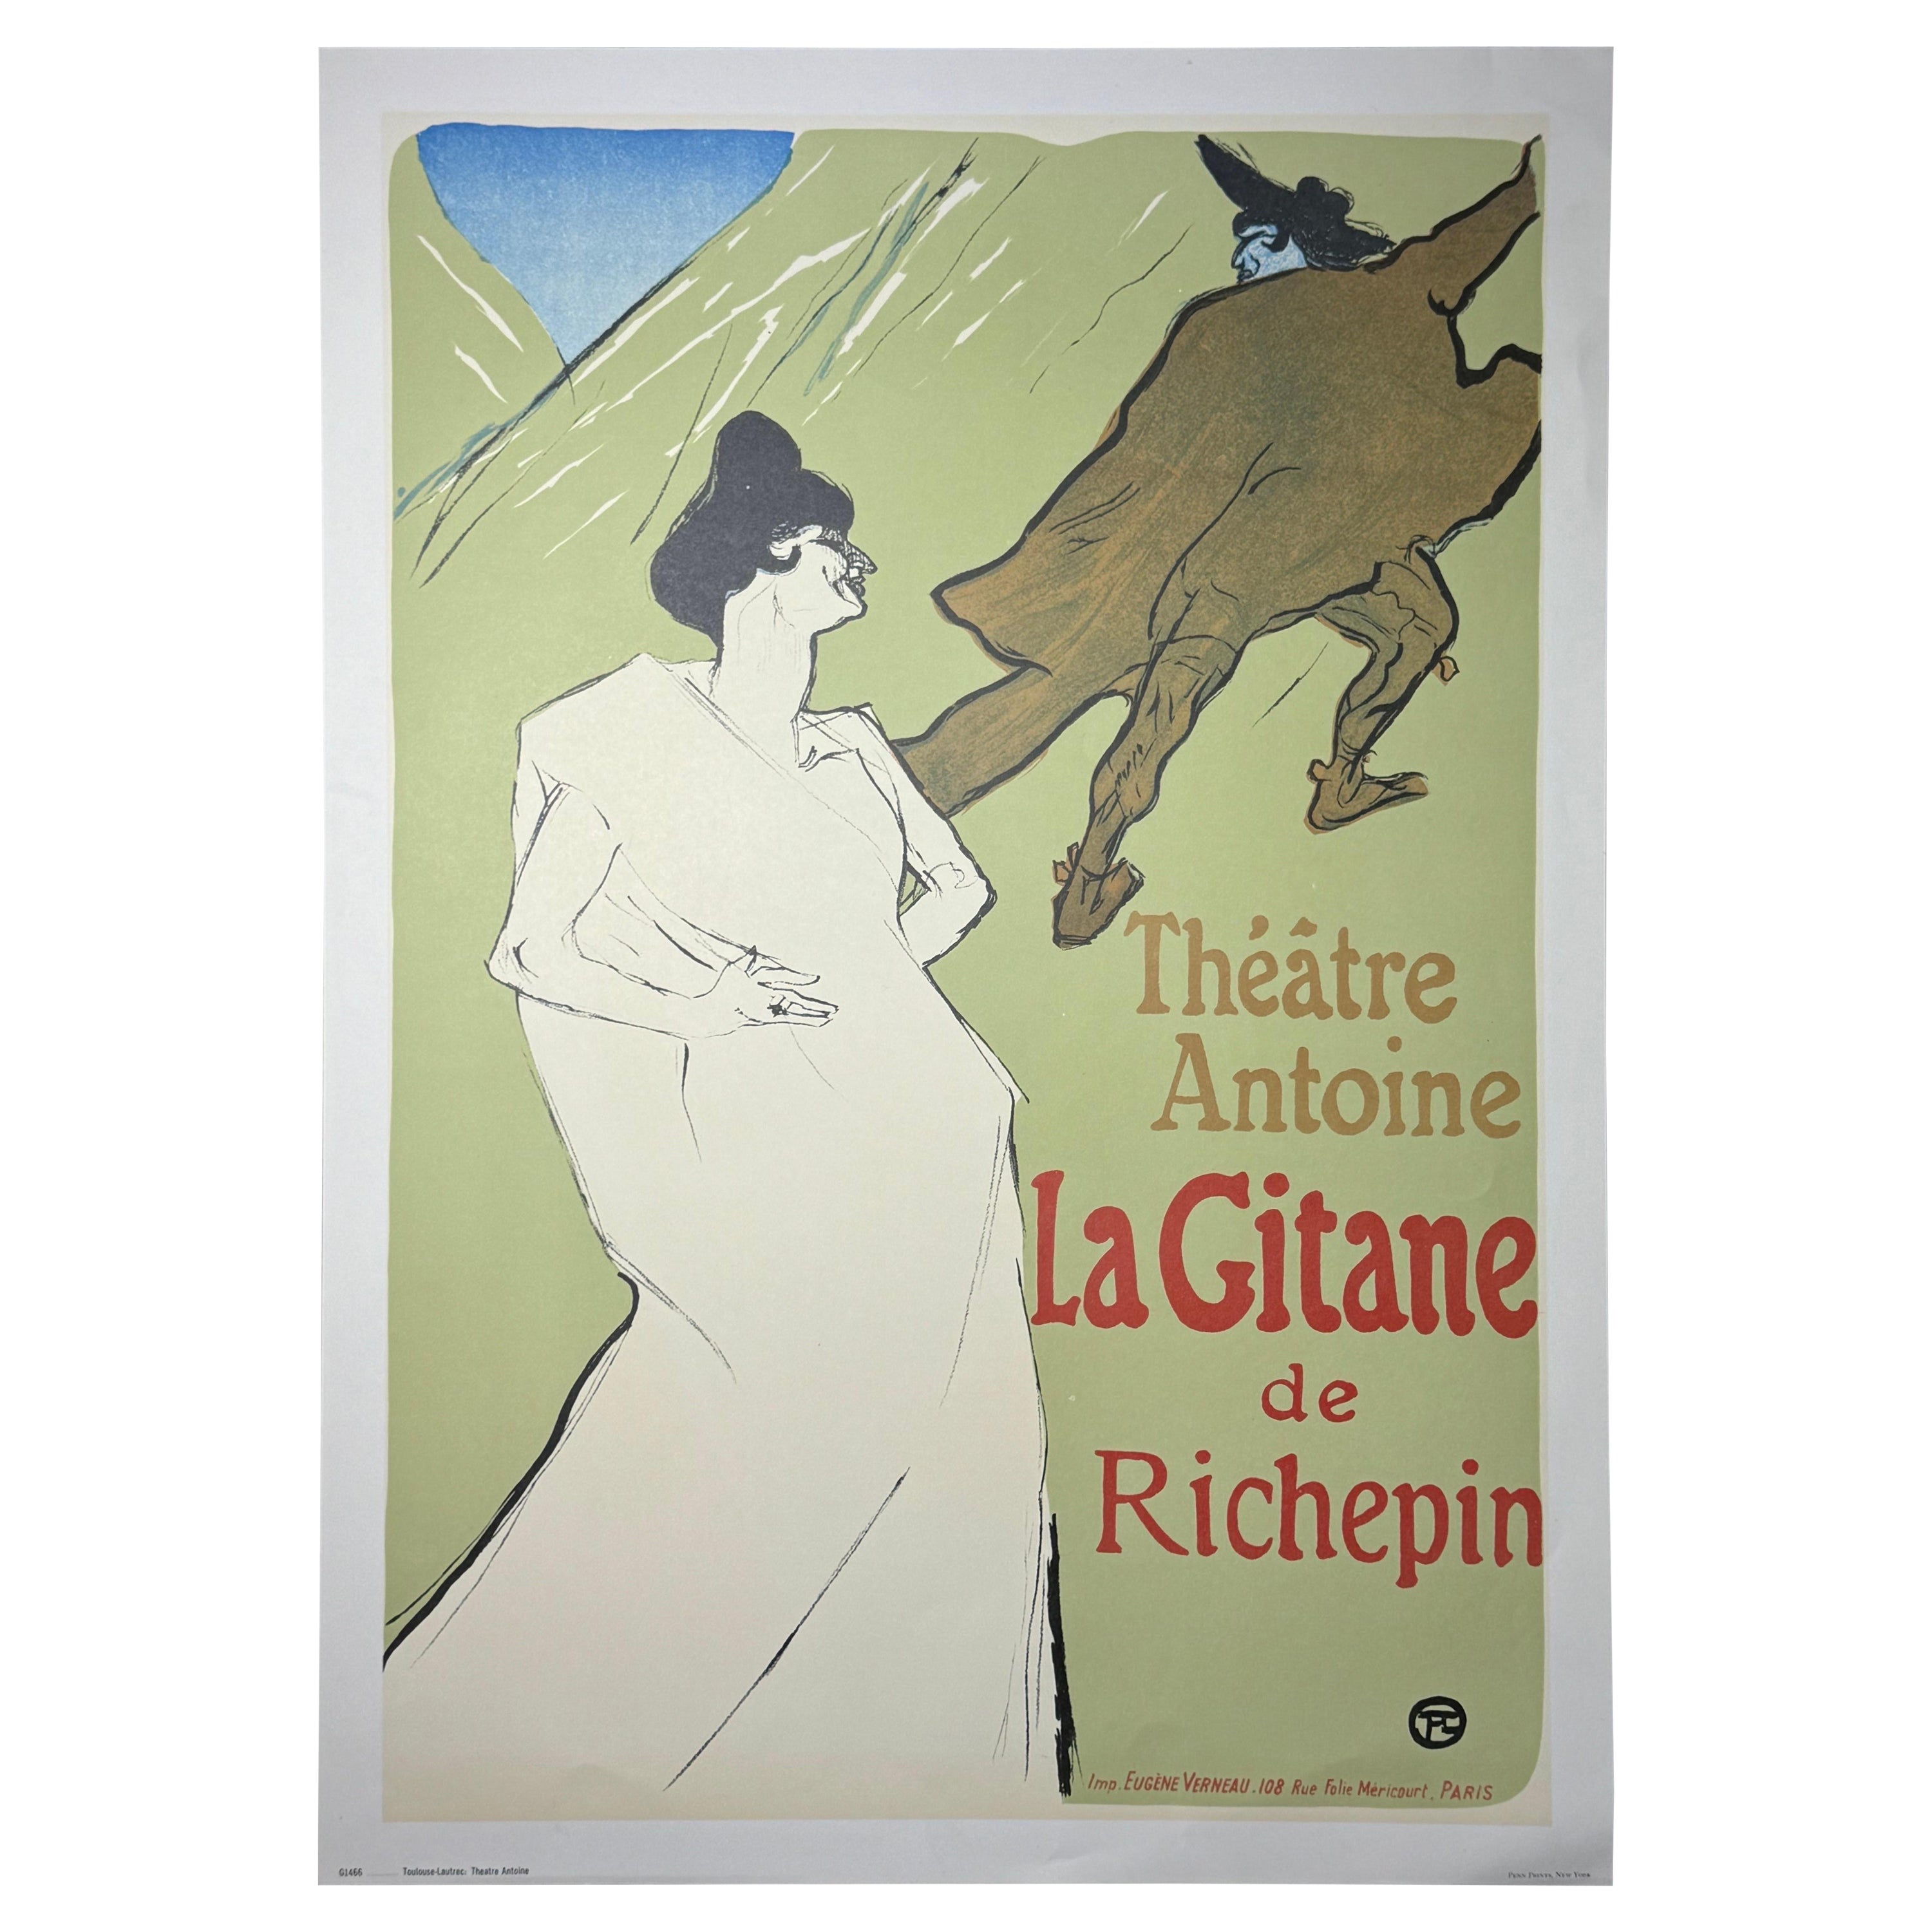 Vintage Henri de Toulouse Lautrec "Theatre Antoine, La Gitane de Richepin" Print For Sale